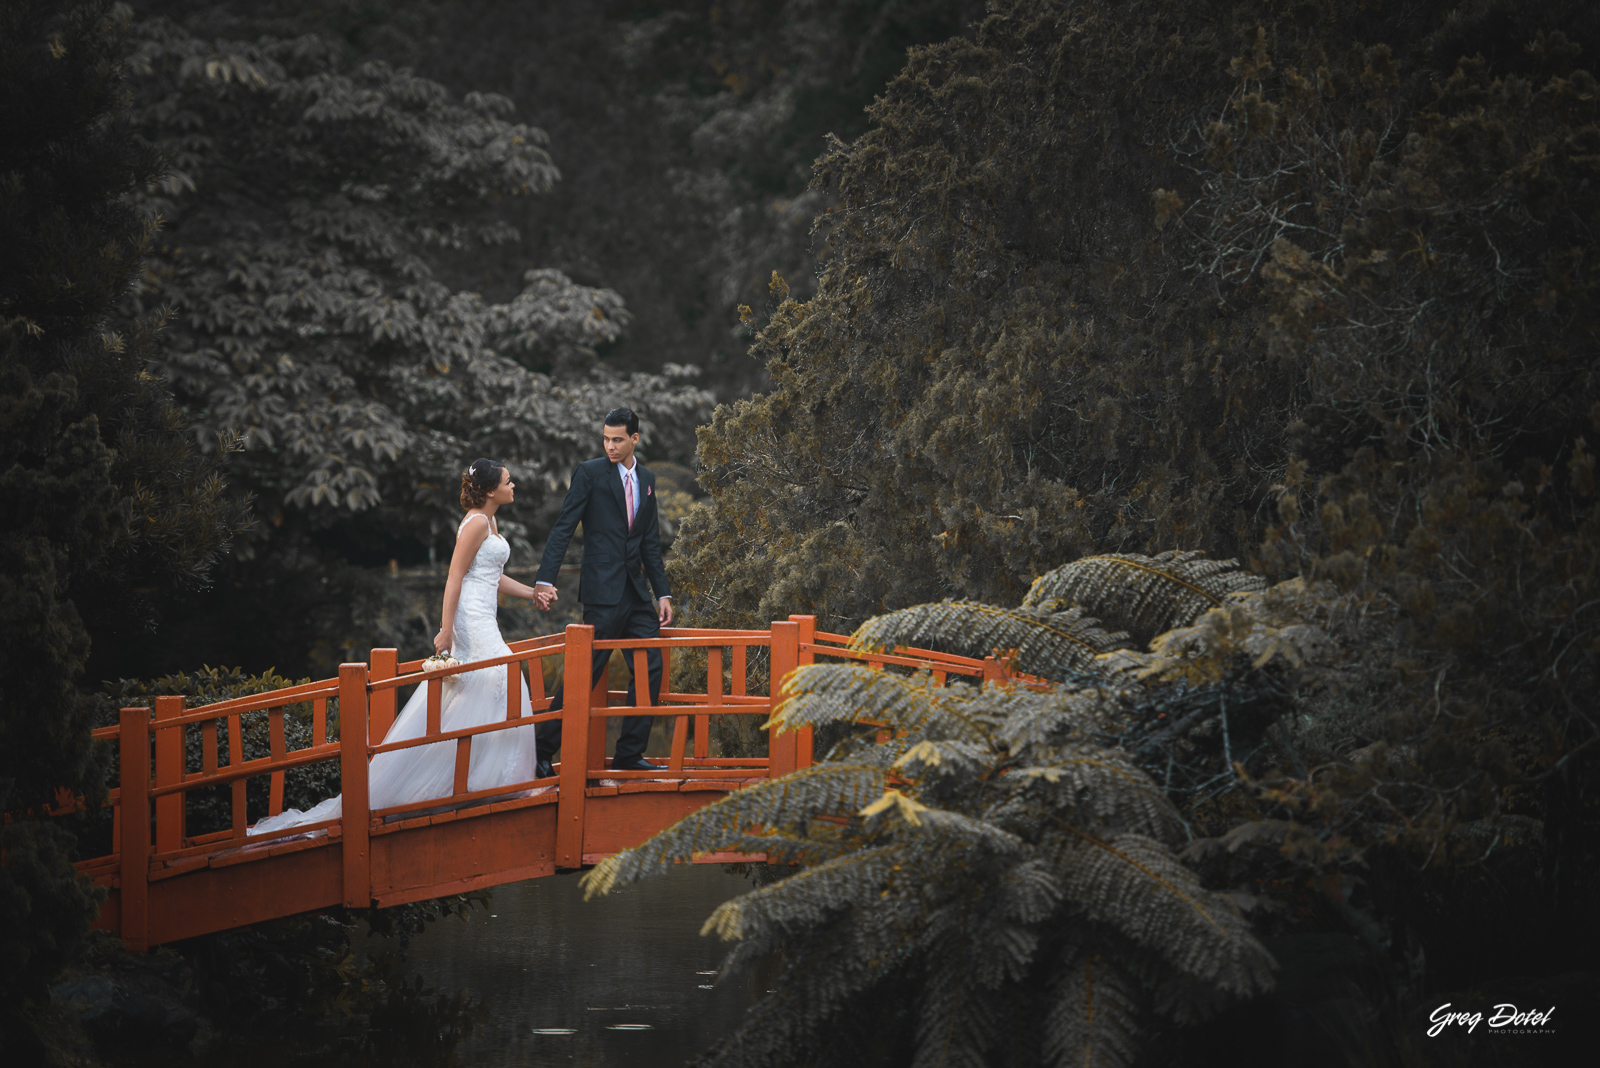 Sesión de fotos de novios o pre boda de Emilie y Carlos en el Jardín Botánico de Santo Domingo, República Dominicana por el fotografo dominicano Greg Dotel Photography